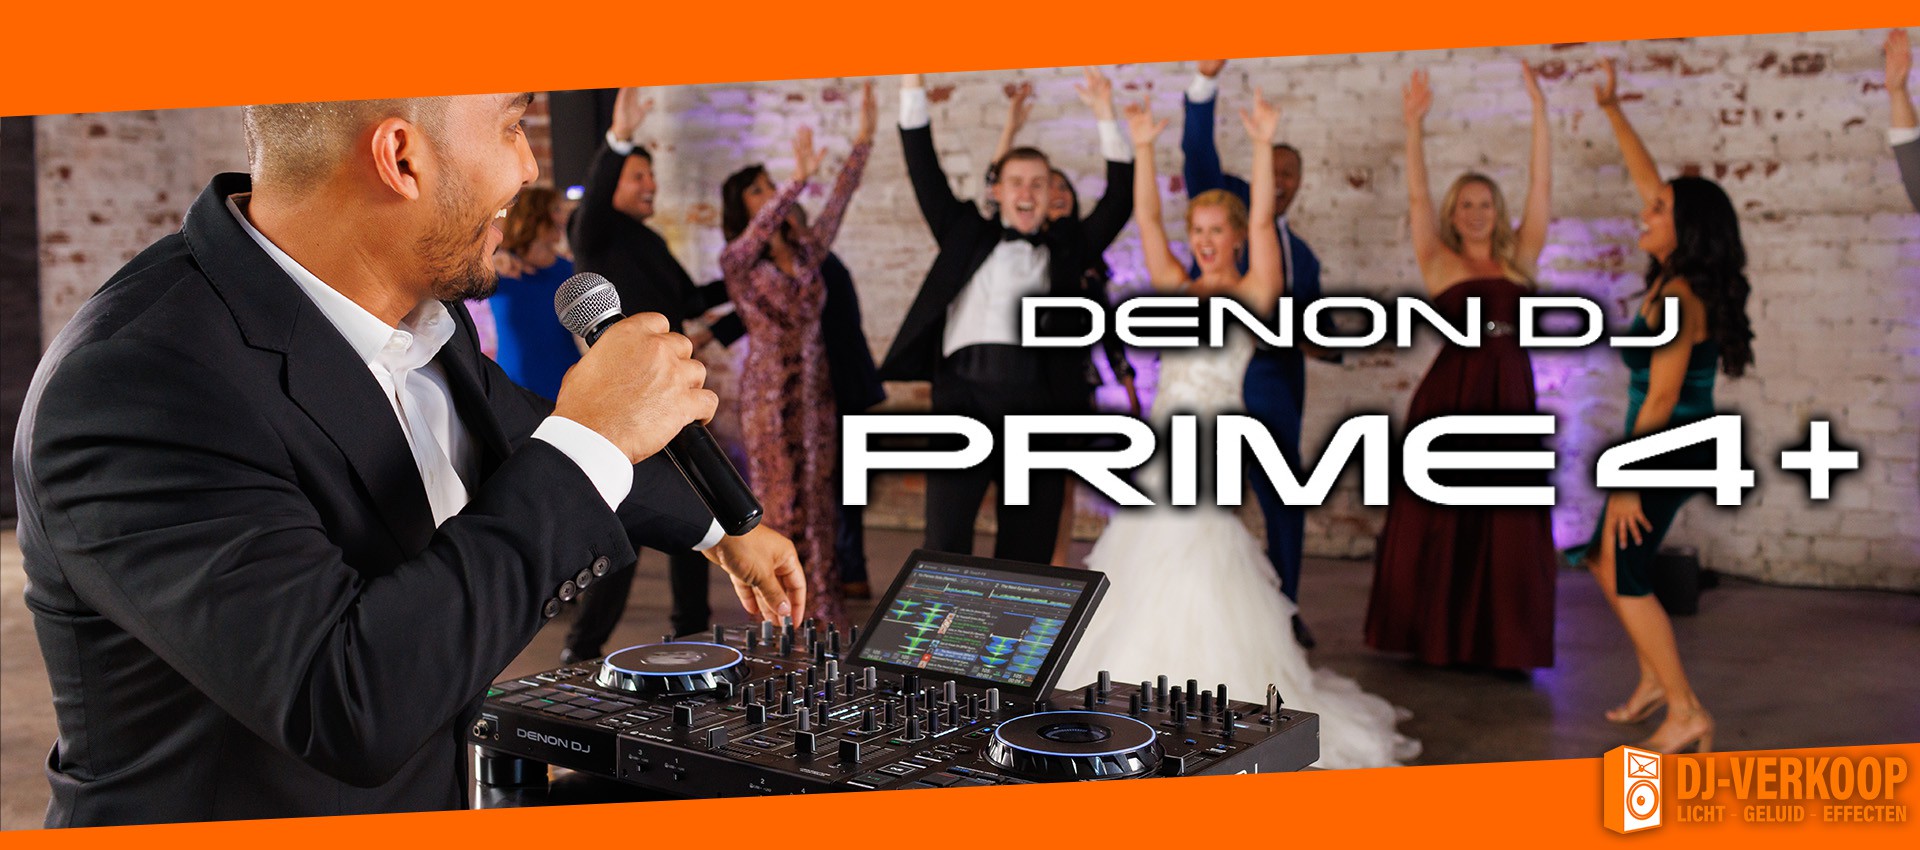 Denon DJ Prime 4+ Voor elk event en van thuis tot Pro DJ